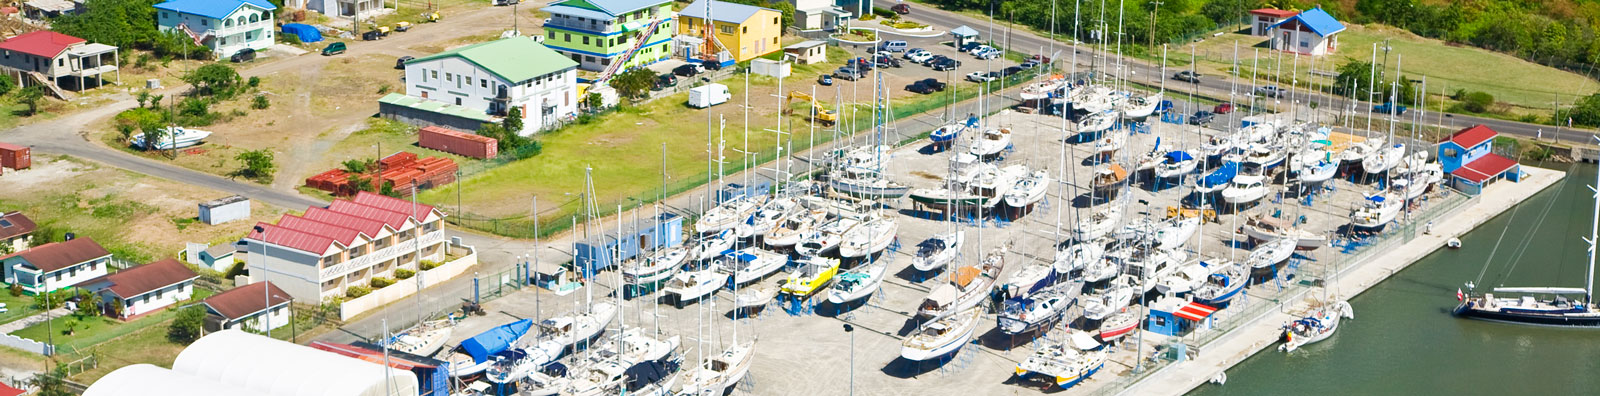 Rodney Bay Marina, St. Lucia